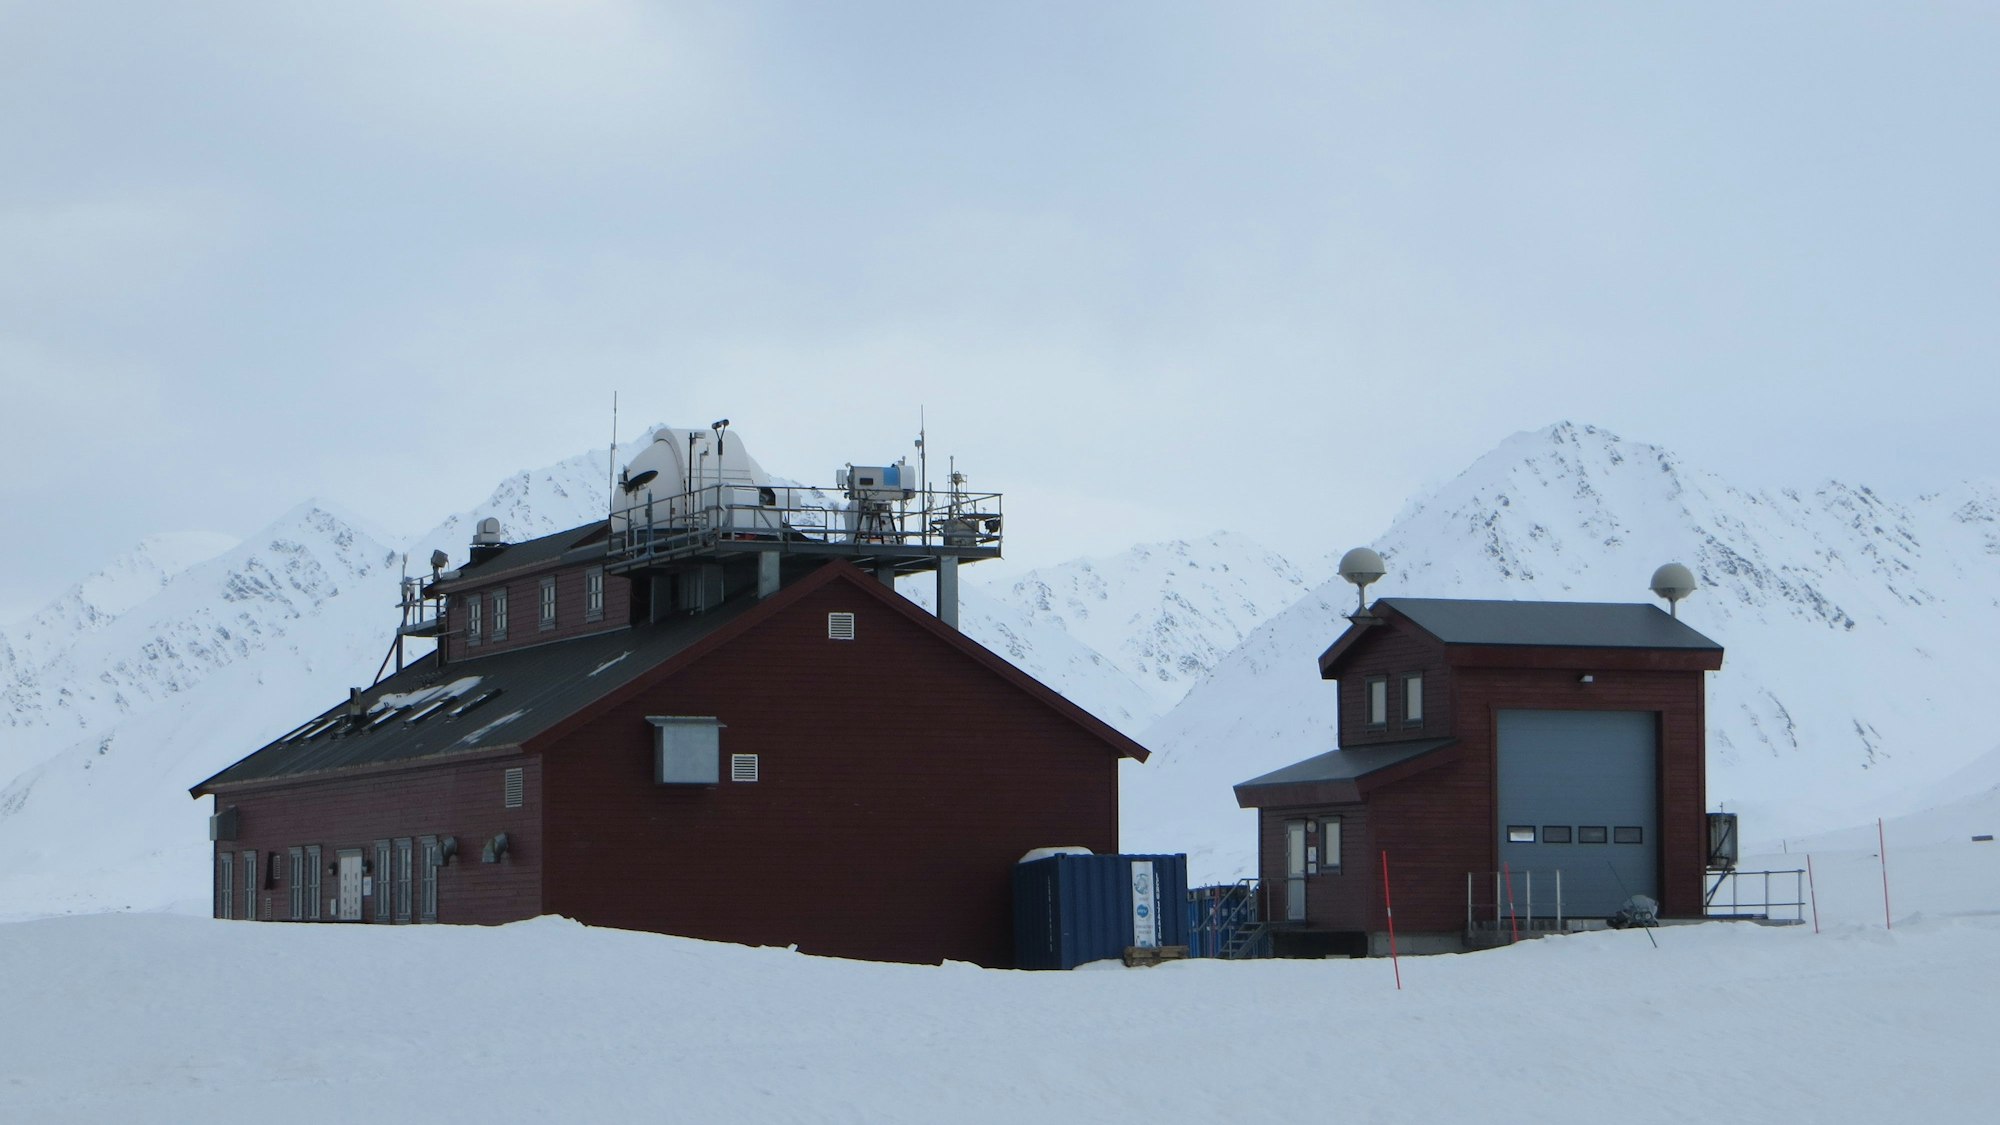 In Ny Alesund auf Spitzbergen liegt eine deutsch-französische Forschungsstation zur Untersuchung des Klimawandels in der Arktis. Das Bild zeigt zwei dunkelrote Häuser mit Antennen und technischen Instrumenten auf dem Dach.